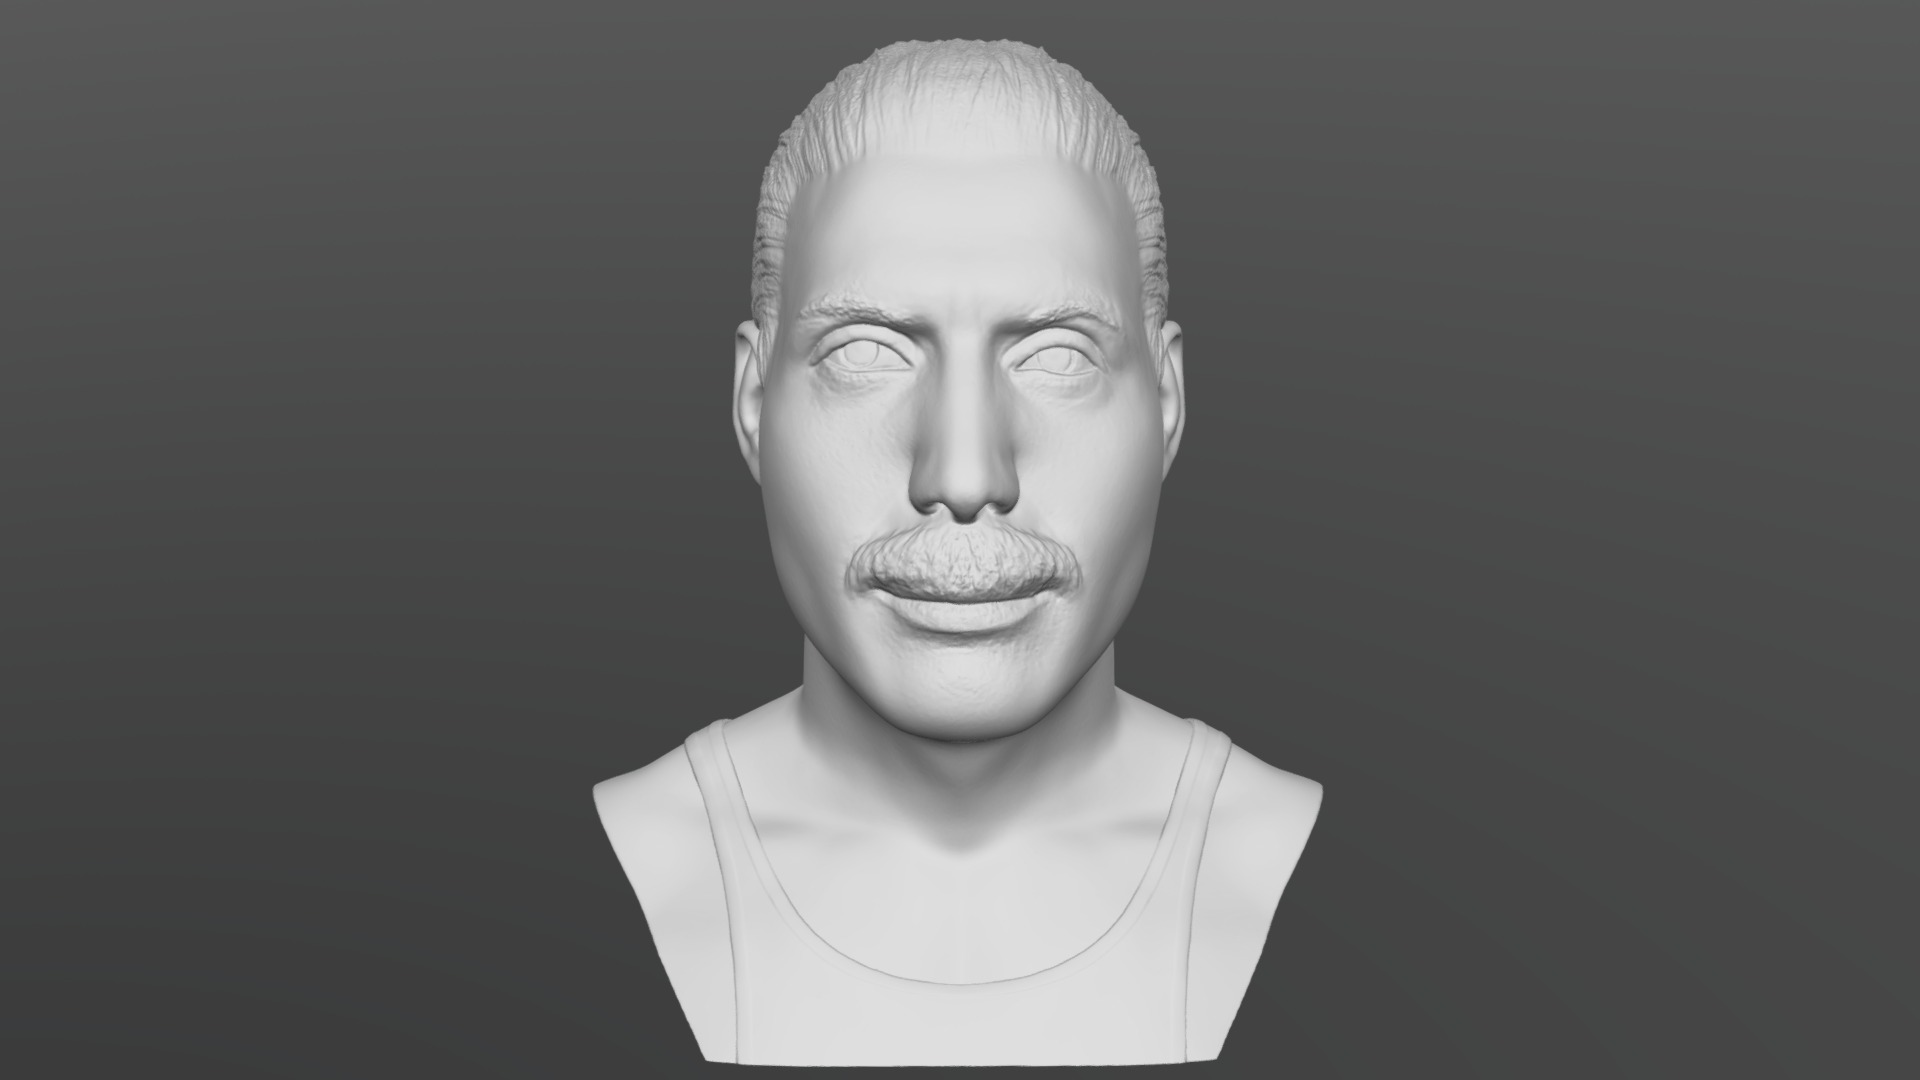 3D model Freddie Mercury bust for 3D printing - This is a 3D model of the Freddie Mercury bust for 3D printing. The 3D model is about a person with a mustache.